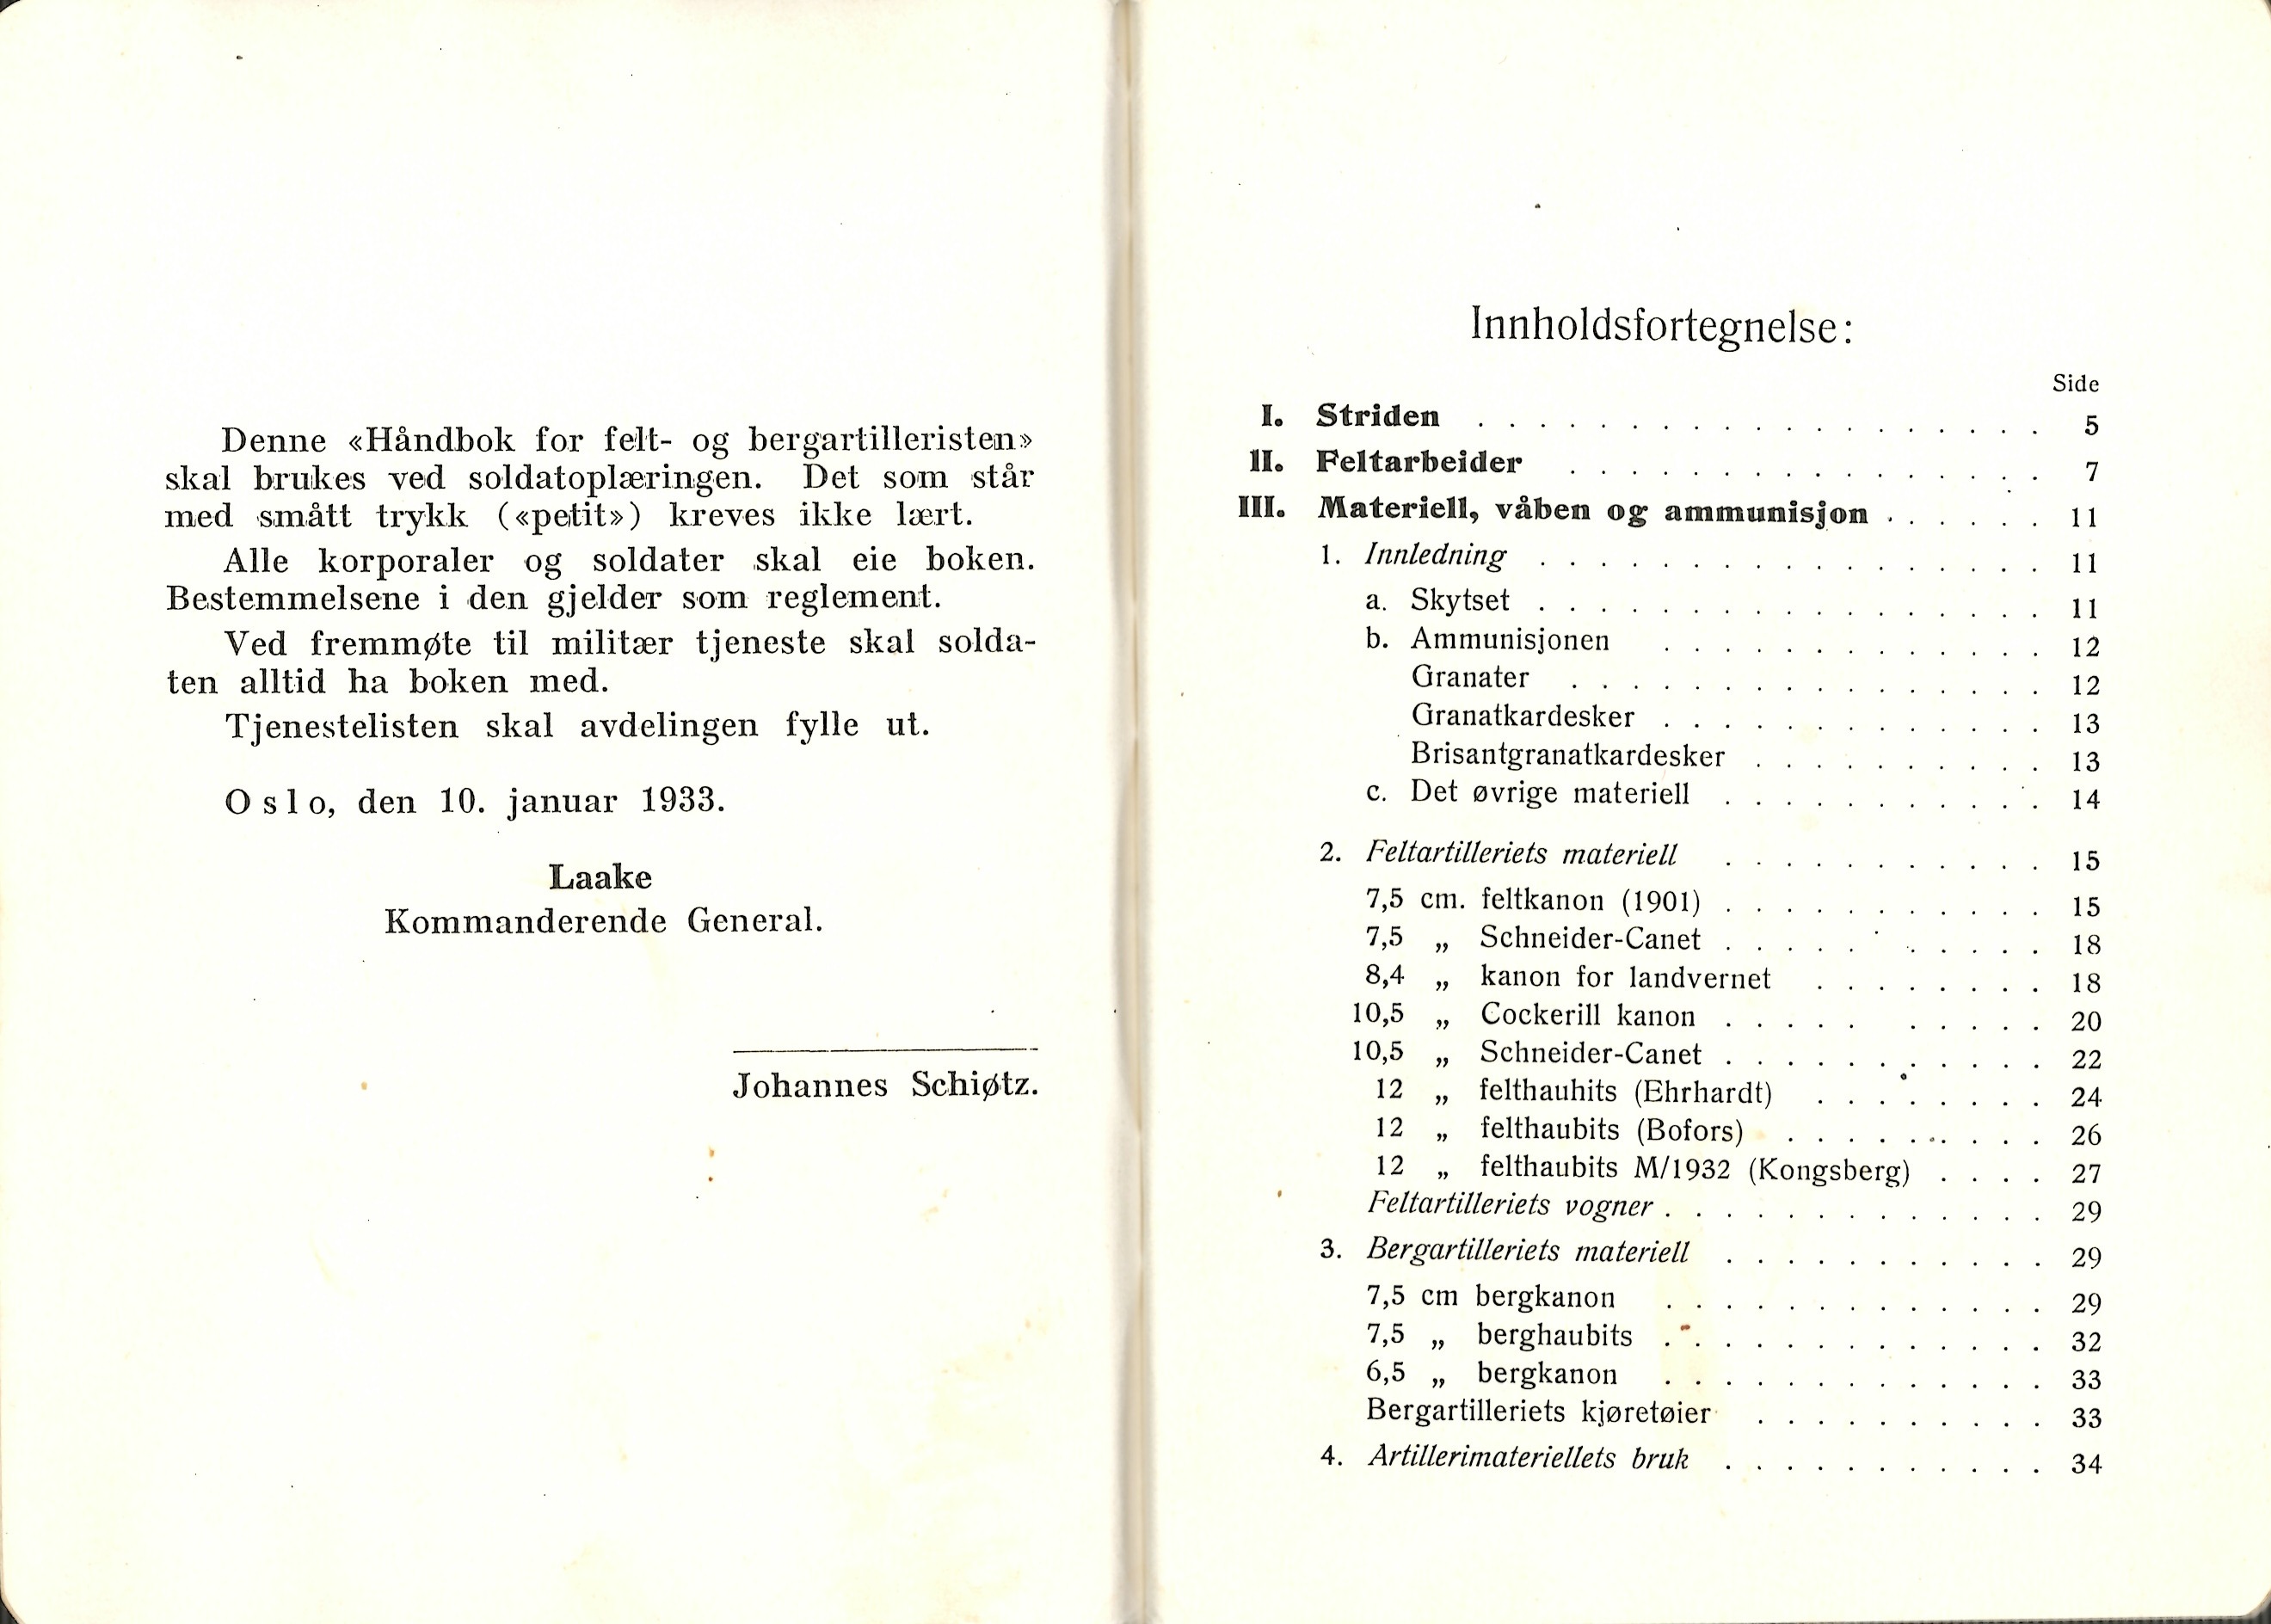 ./doc/reglement/K1/K1-Handbok-Felt-og-bergartilleristen-1938-3.jpg